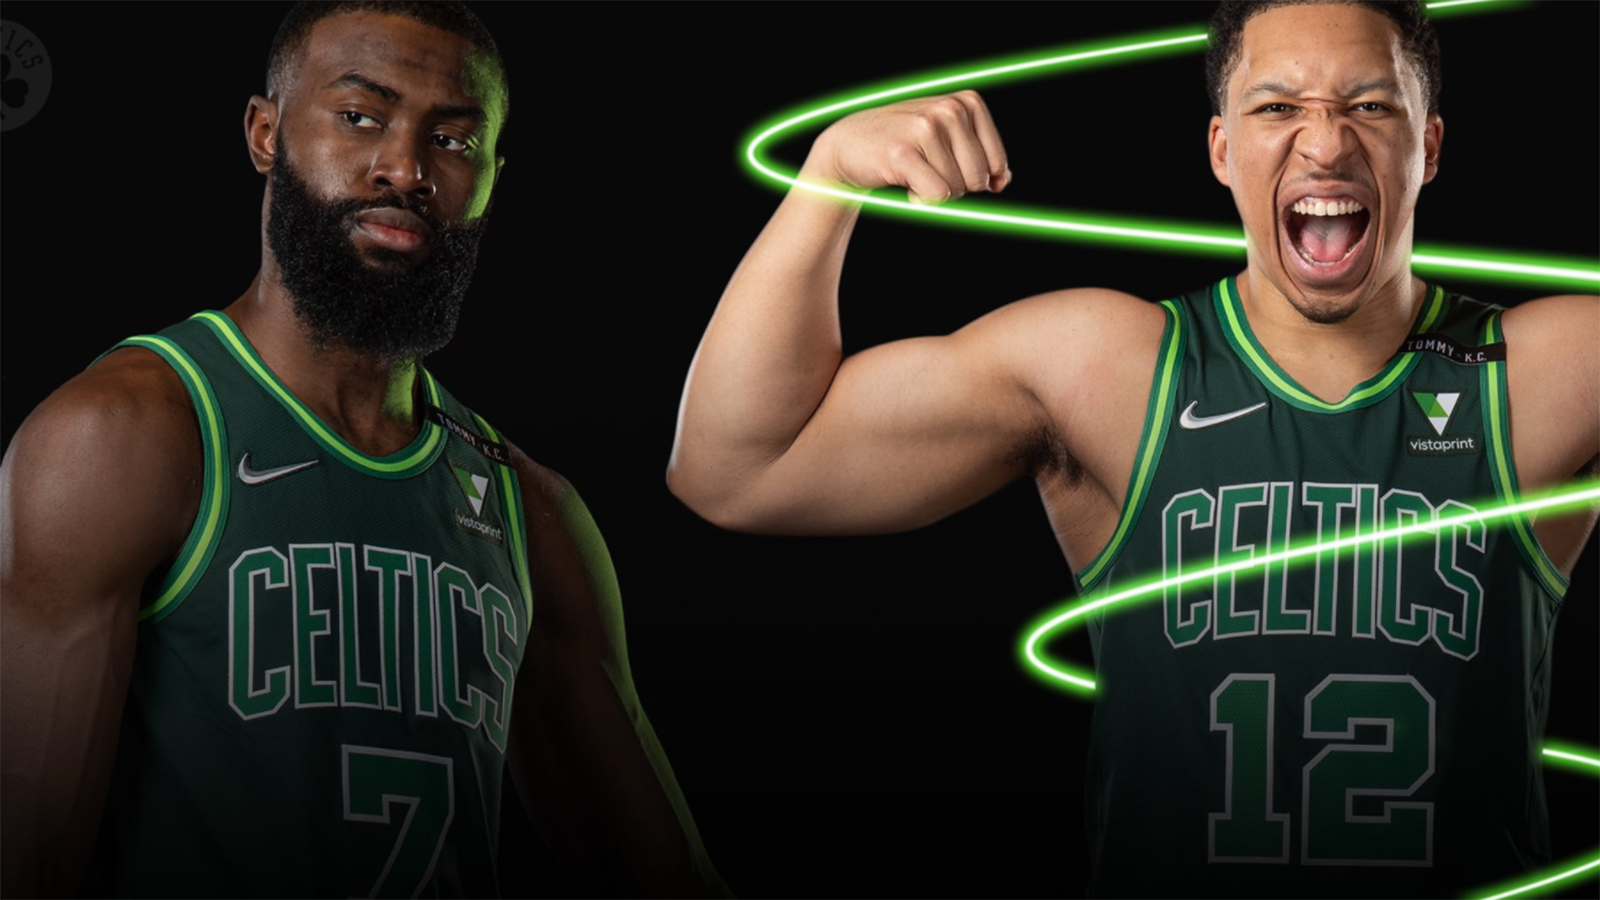 
                <strong>Boston Celtics</strong><br>
                Immer wieder versuchen es die Celtics mit neuen Grüntönen, aber wirklich voran kommt Boston damit nicht. Vielleicht muss mal wieder mehr gewagt werden?
              